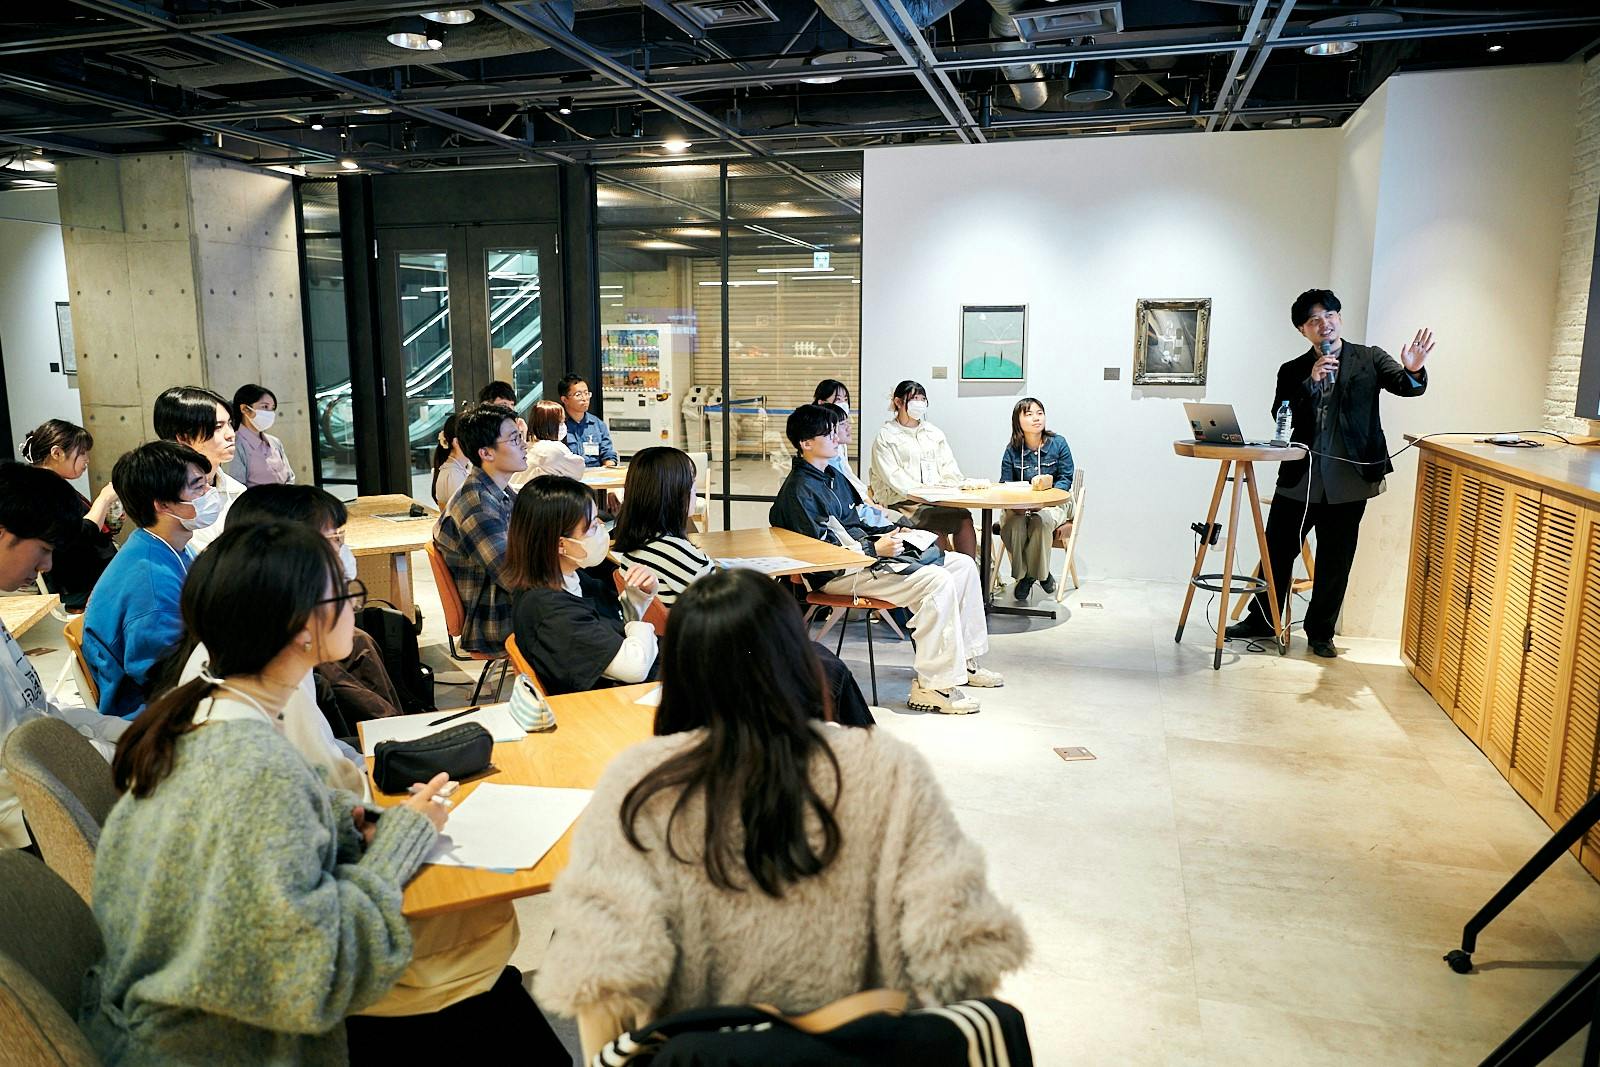 動画クリエイターが極意を伝授！ TikTokが名古屋市の「なごや学生社会課題解決プログラム」と連携してショートムービー制作セミナーを実施